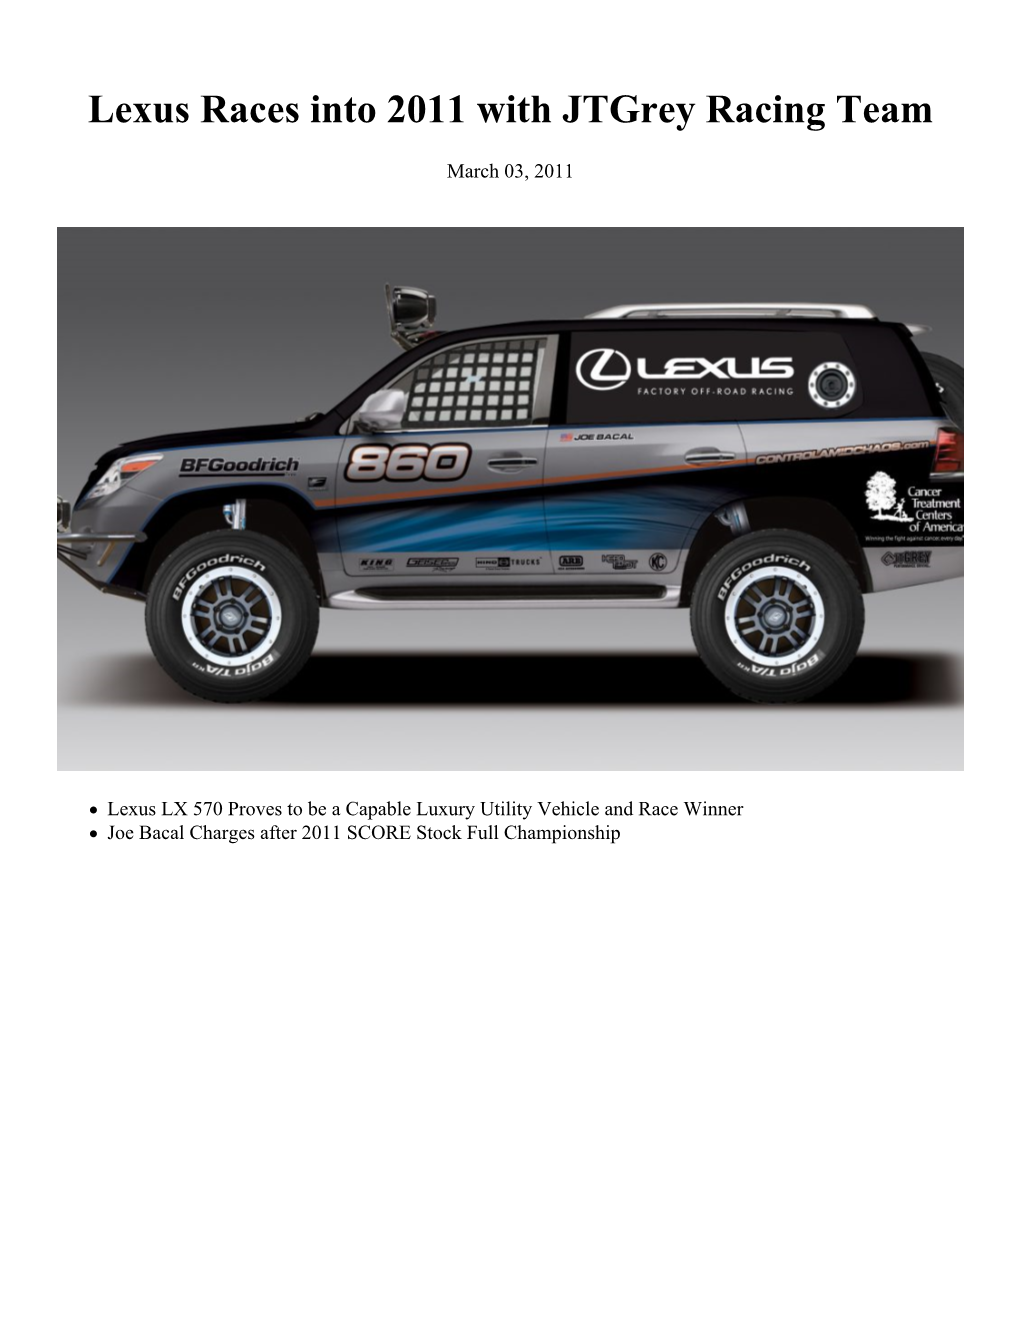 Lexus Races Into 2011 with Jtgrey Racing Team